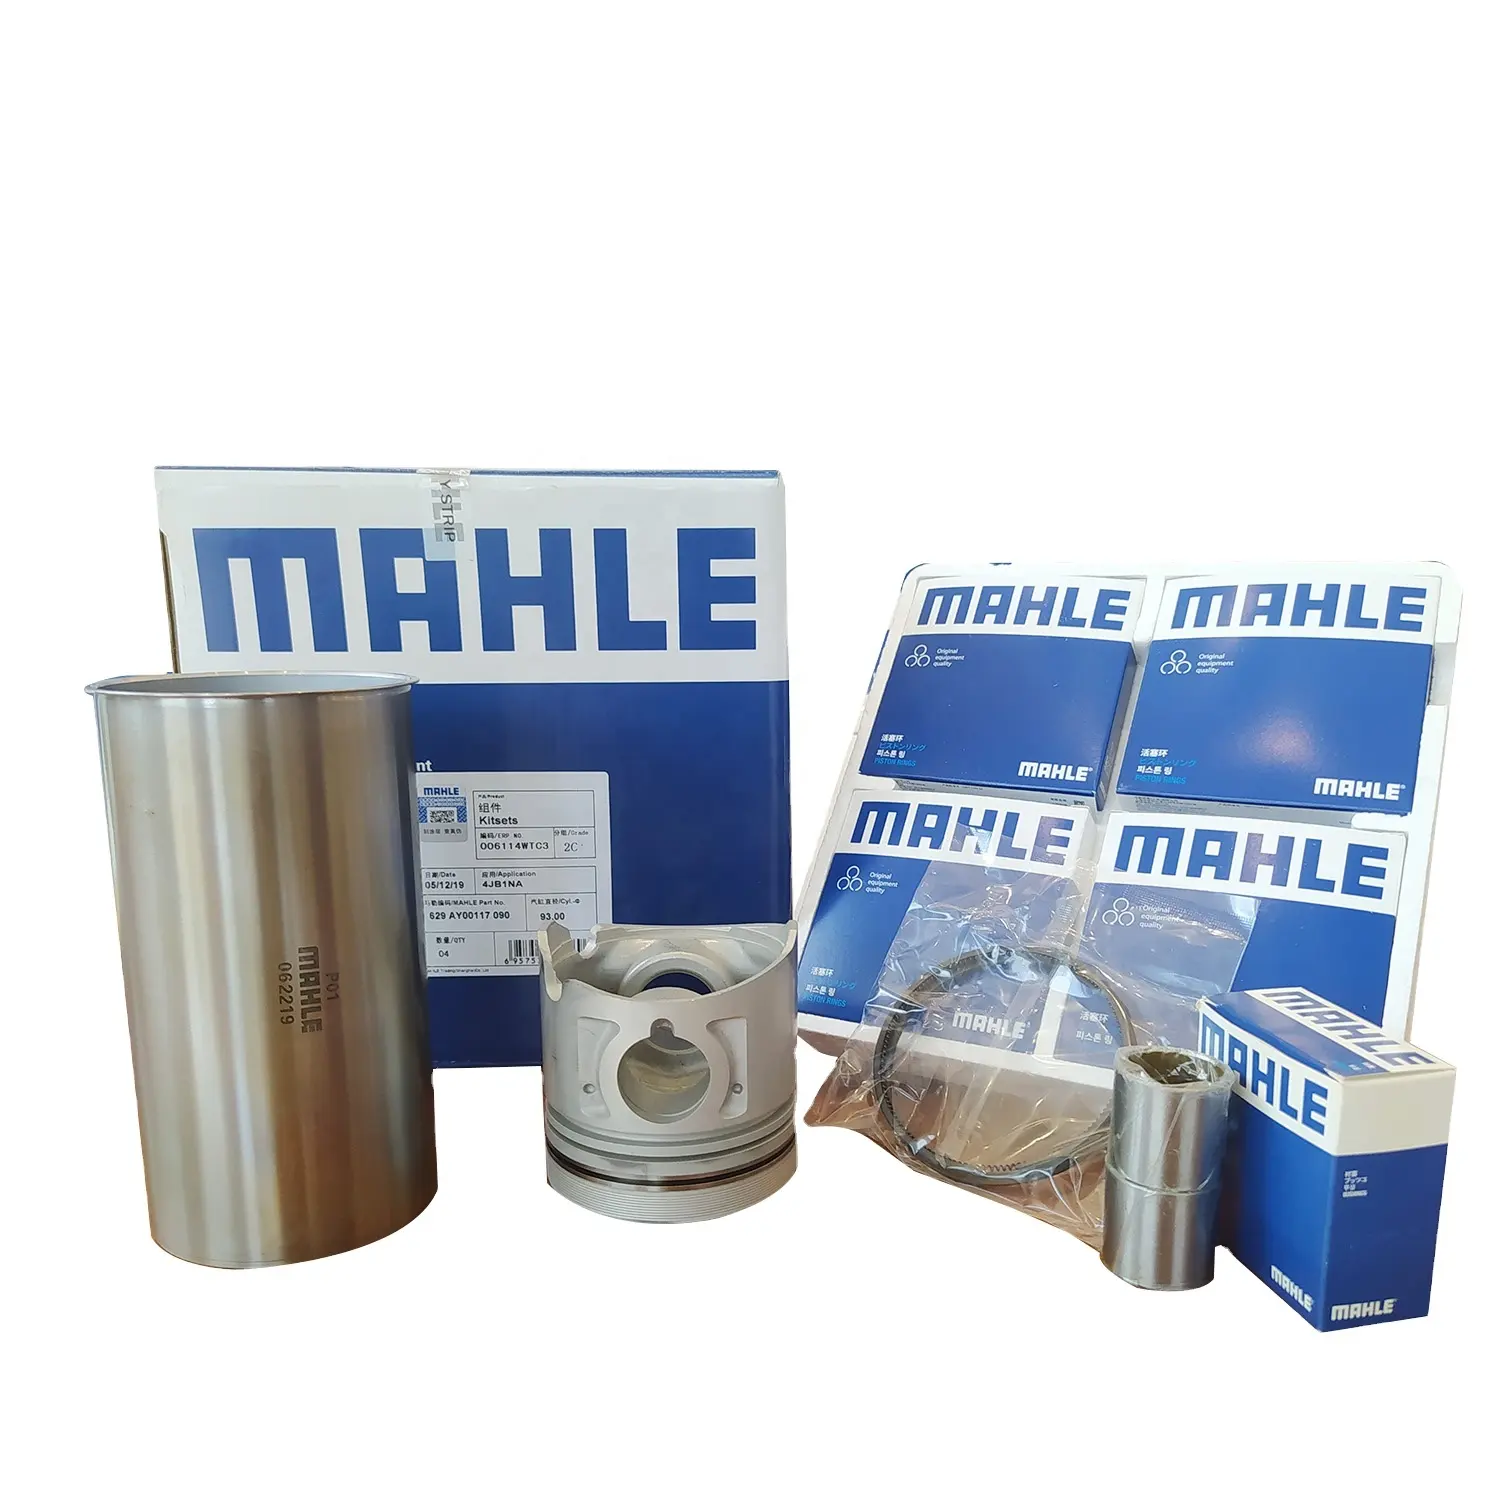 純正MAHLEメーカー8-97220-604-0ディーゼルエンジン4JG1シリンダーライナーキットいすゞショベル修理オーバーホールセット用